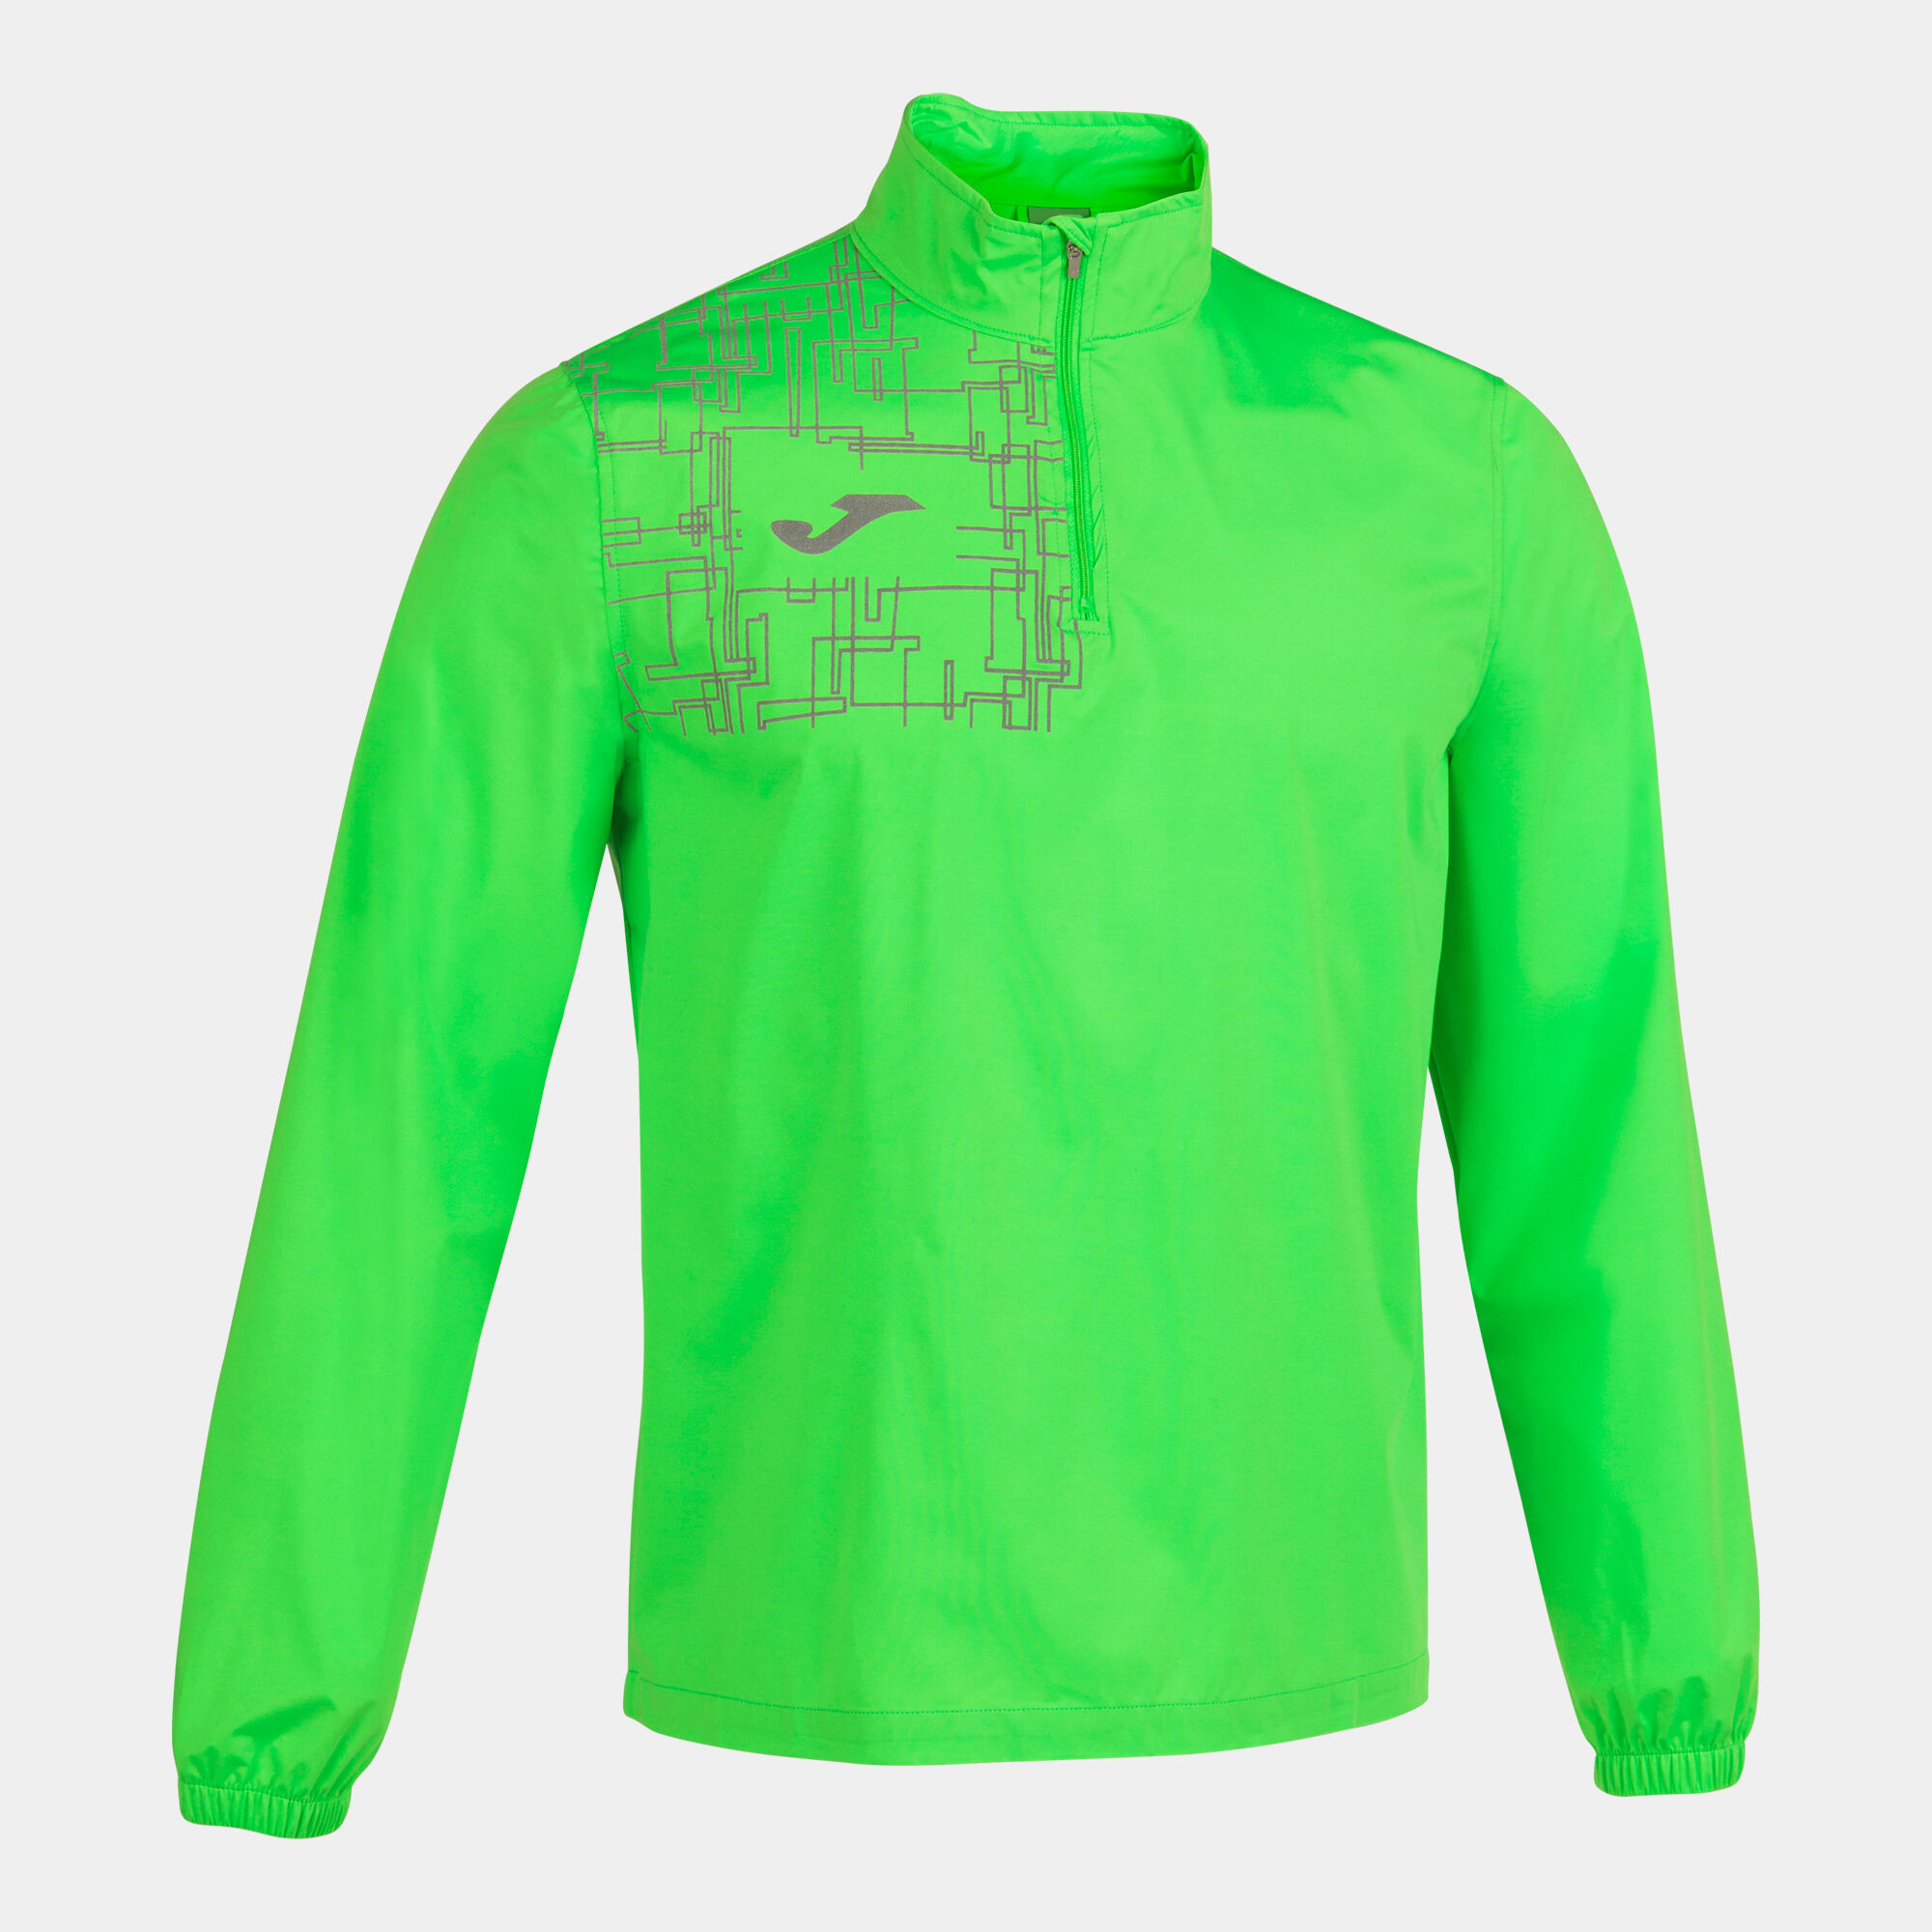 Sweat-shirt homme Elite VIII vert fluo